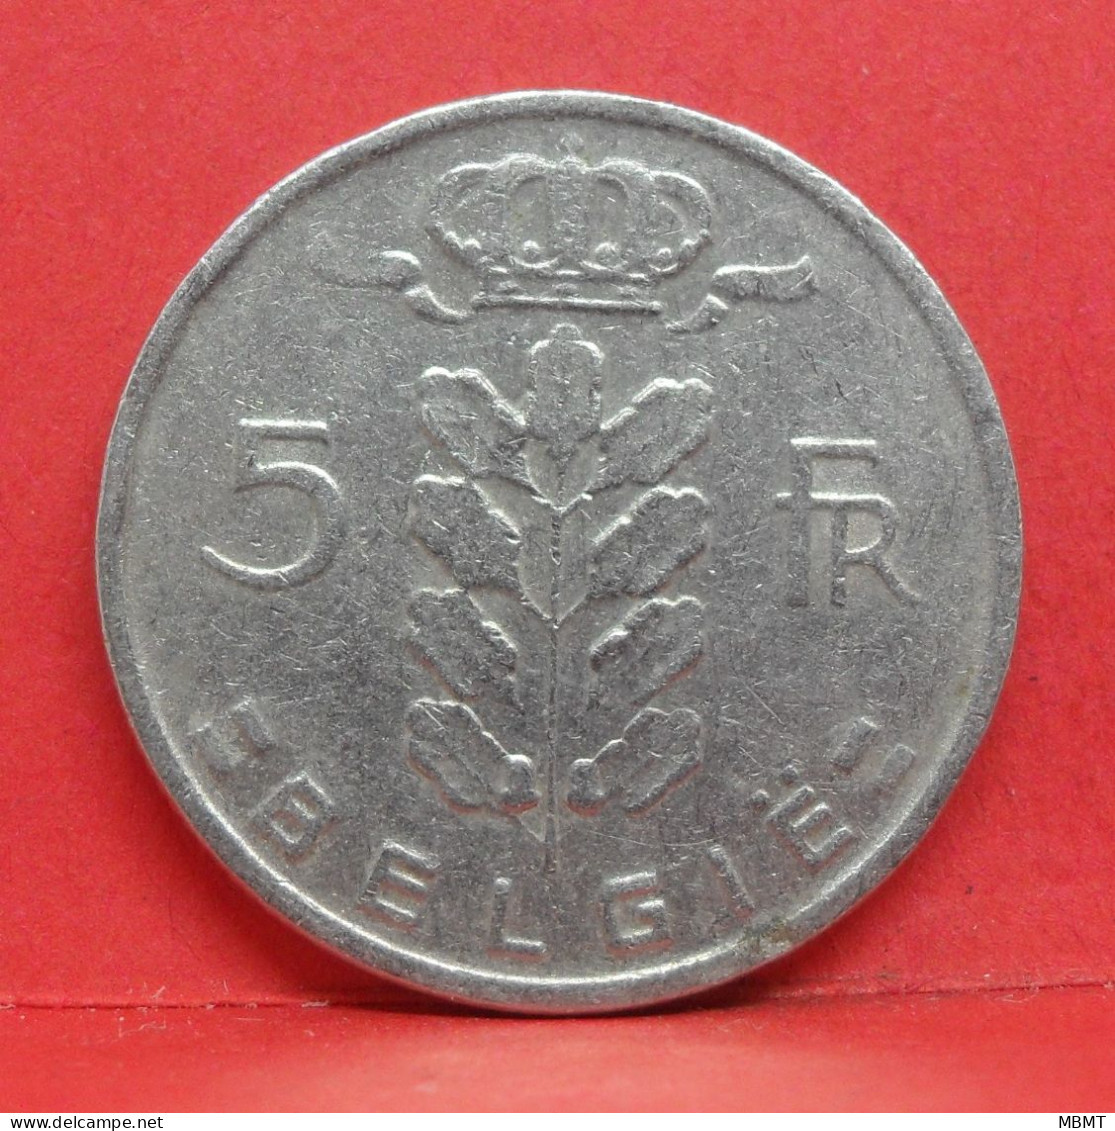 5 Frank 1968 - TB - Pièce Monnaie Belgie - Article N°1990 - 5 Frank